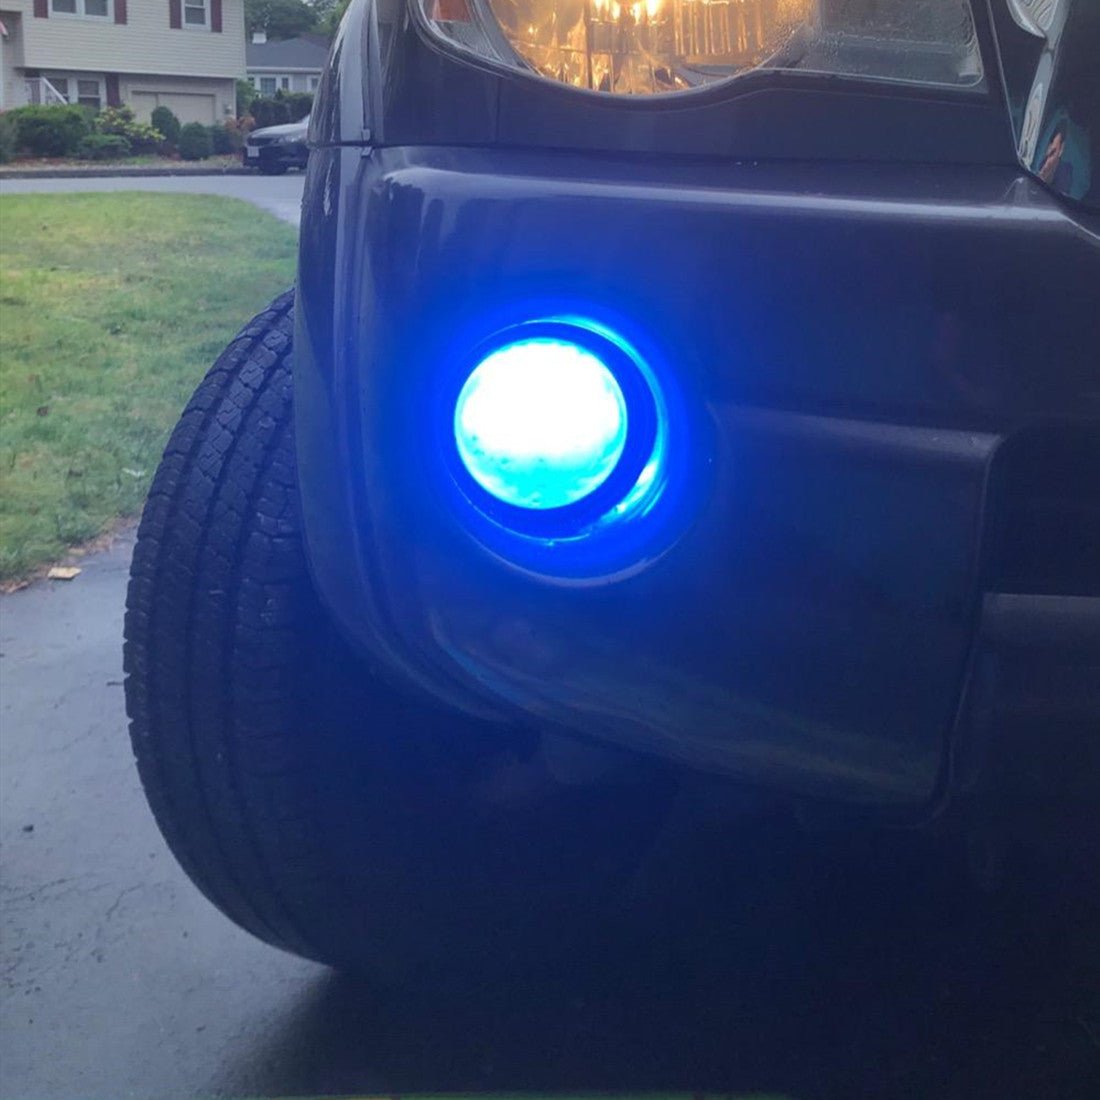 894 896 881 LED Fog Lights Bulb 12V Replacement for Cars, Trucks -Alla Lighting